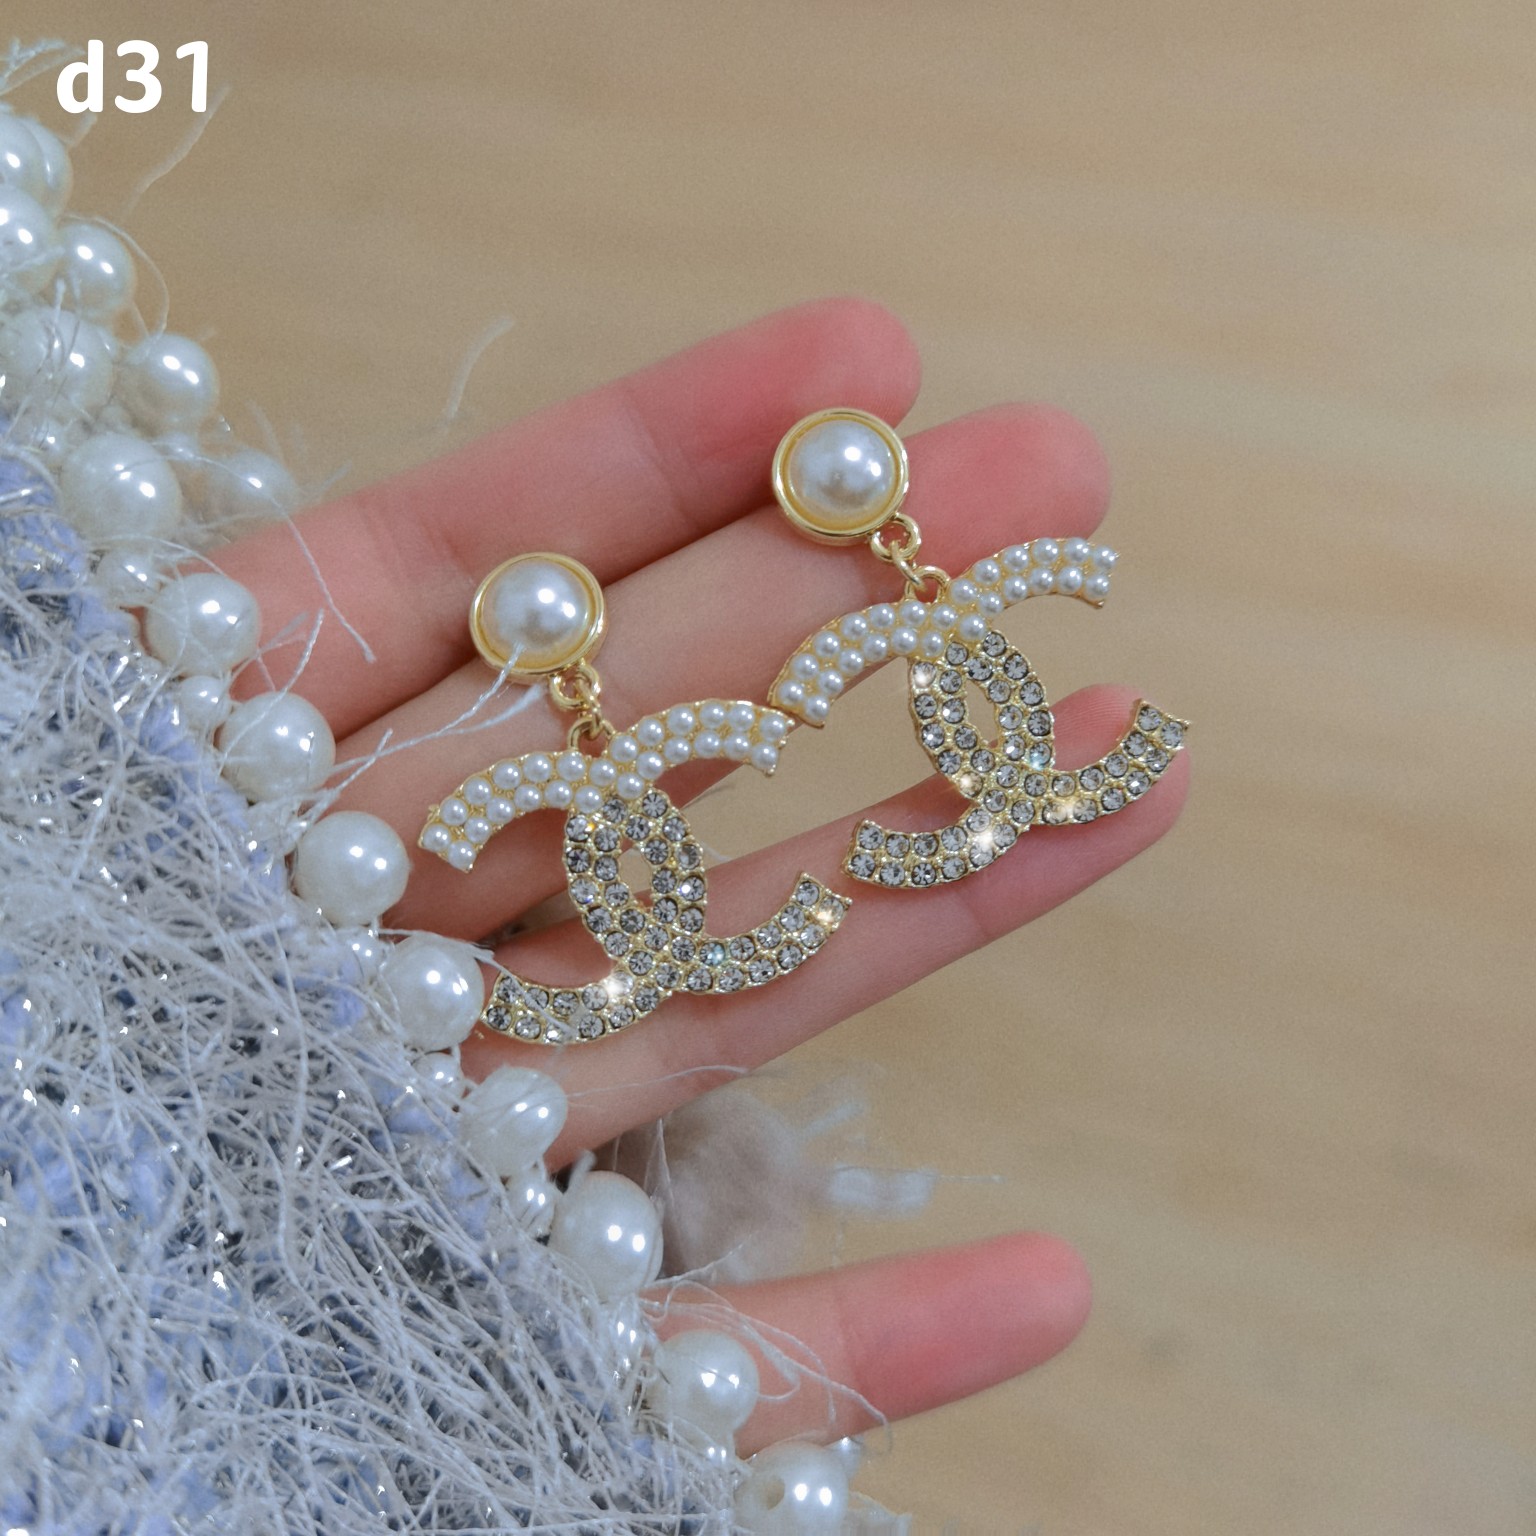 Chanel earring 107615